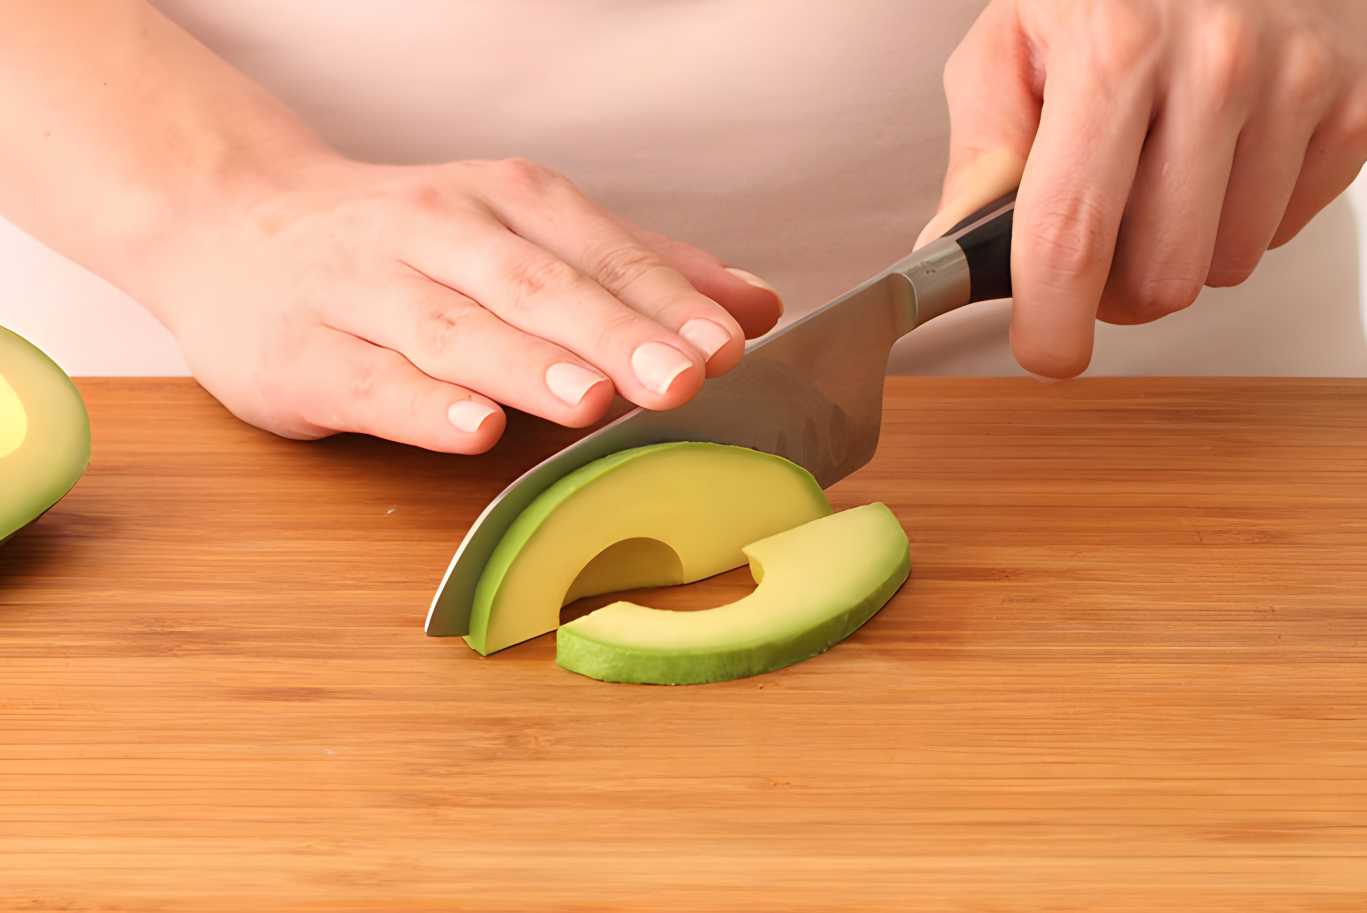 Slicing the Avocado